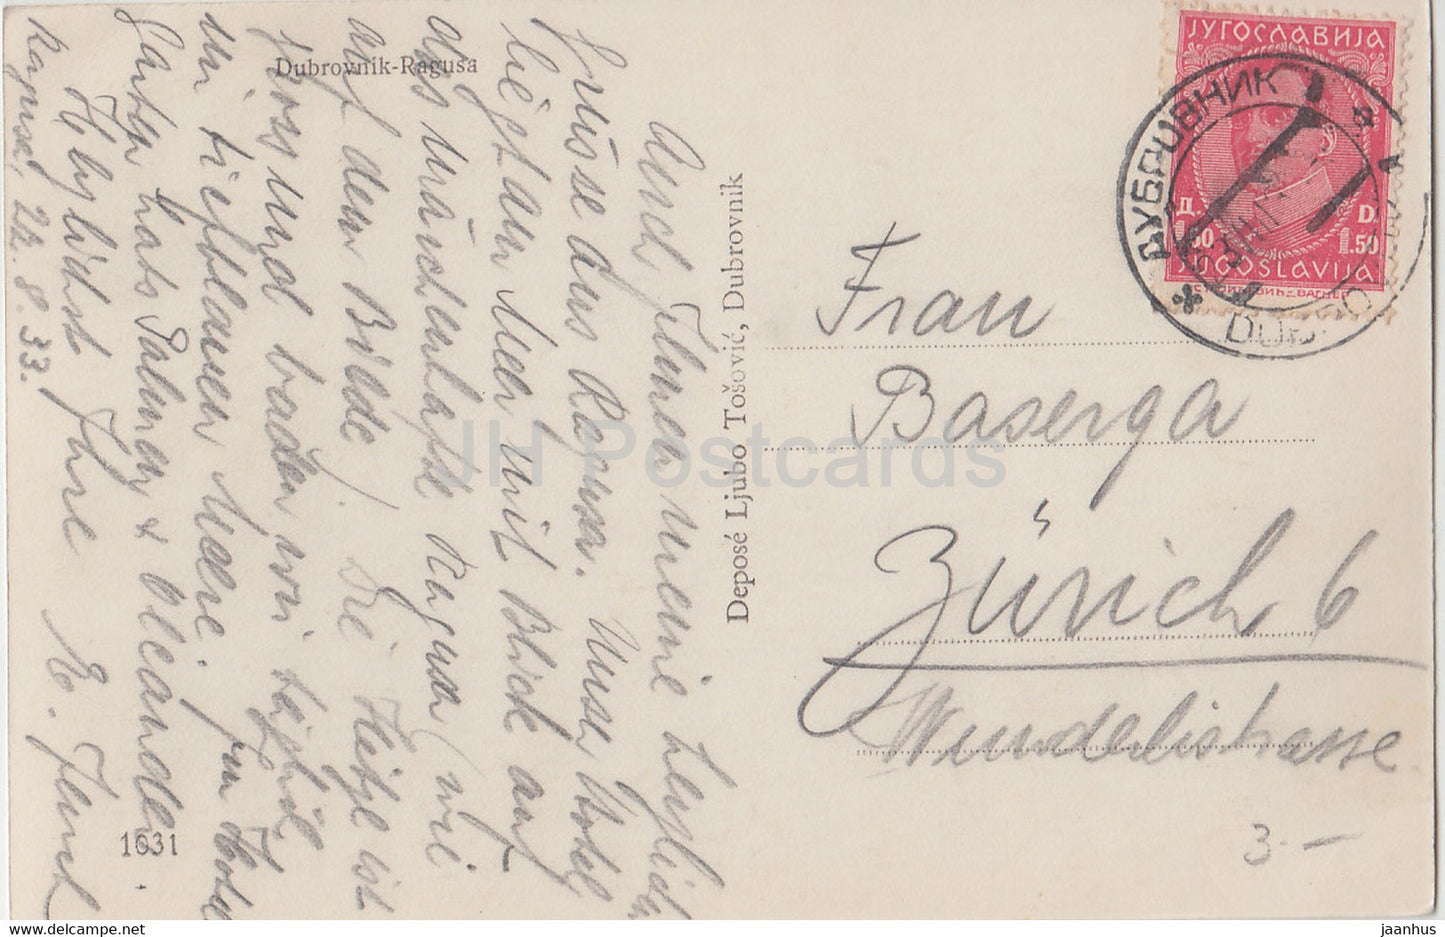 Dubrovnik - Ragusa - 1031 - carte postale ancienne - 1933 - Croatie - Yougoslavie - utilisé